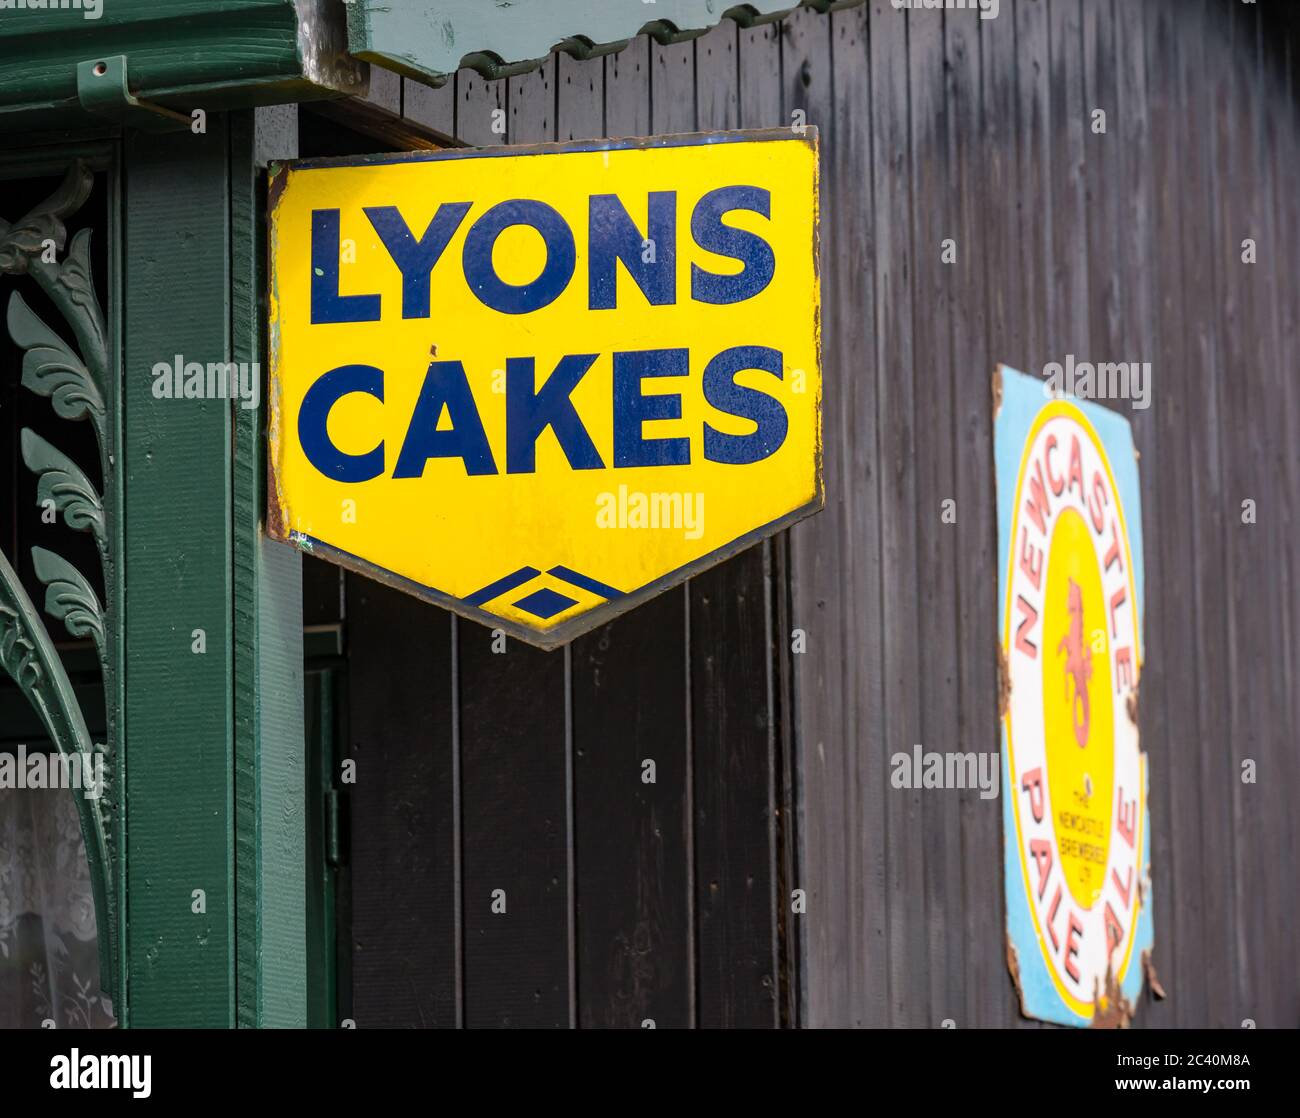 Panneau publicitaire vintage à l'ancienne pour les gâteaux de Lyon, musée Beamish, comté de Durham, Angleterre, Royaume-Uni Banque D'Images